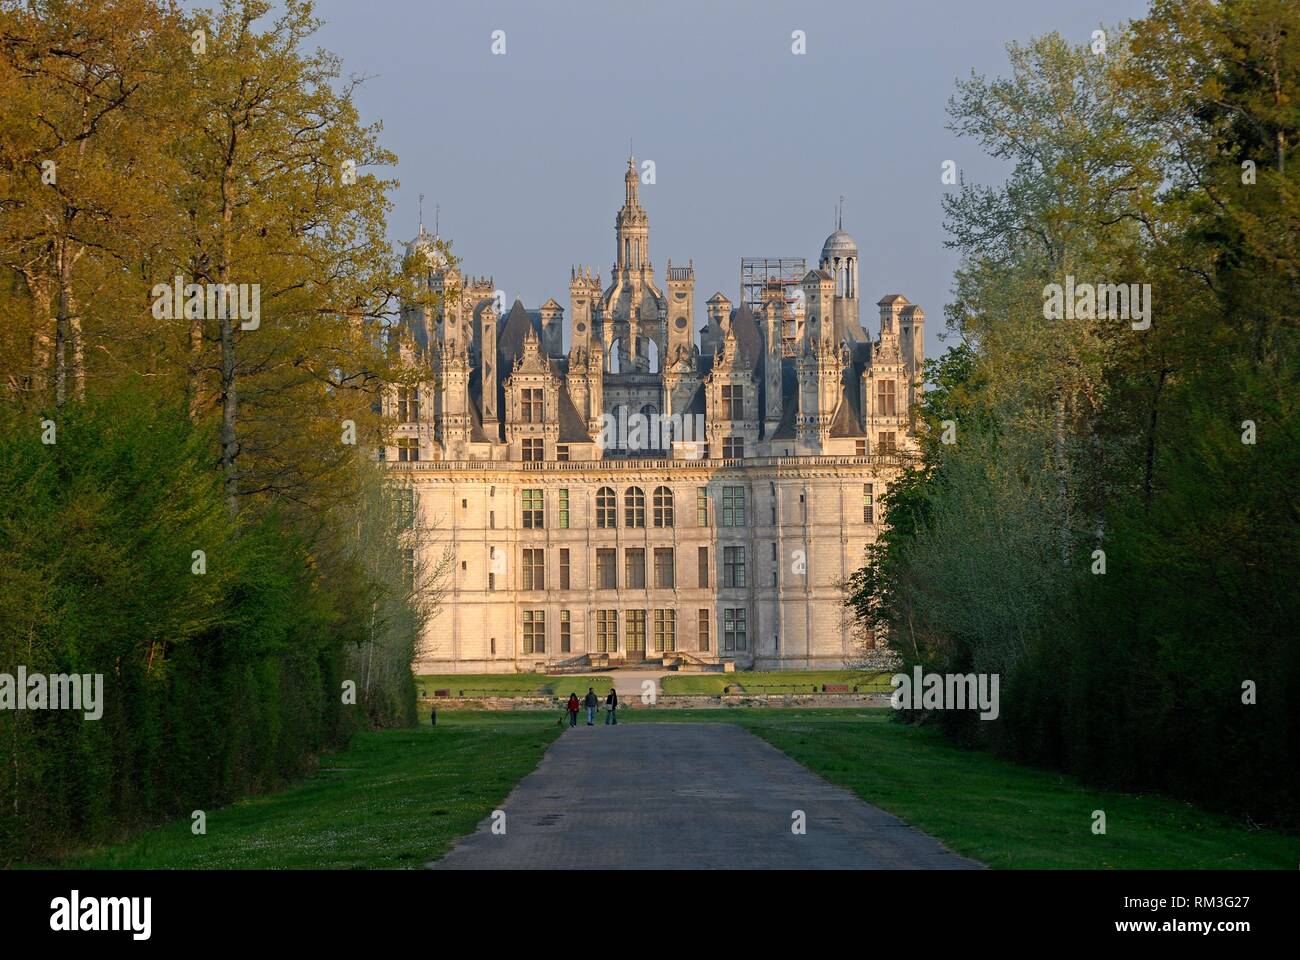 Chateau de Chambord, Loir-et-Cher department, Centre-Val de Loire region, France, Europe. Stock Photo